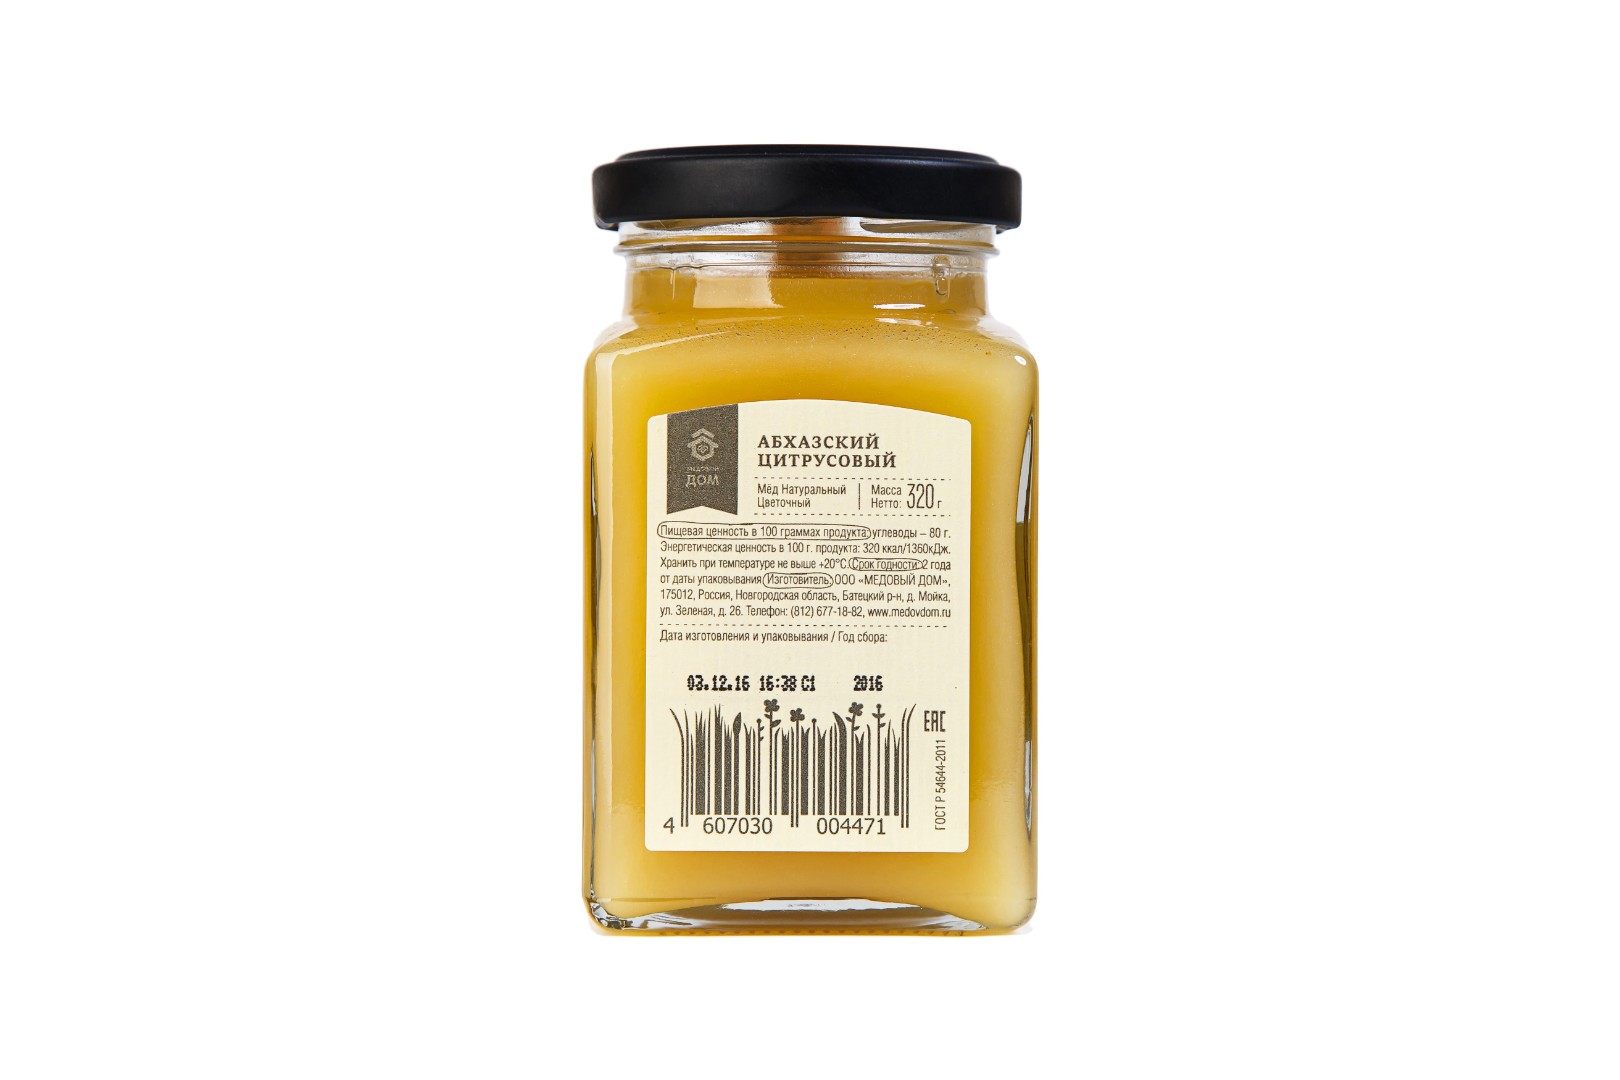 Мёд МЕДОВЫЙ ДОМ натуральный цветочный  Абхазский цитрусовый 320г6шт стекло